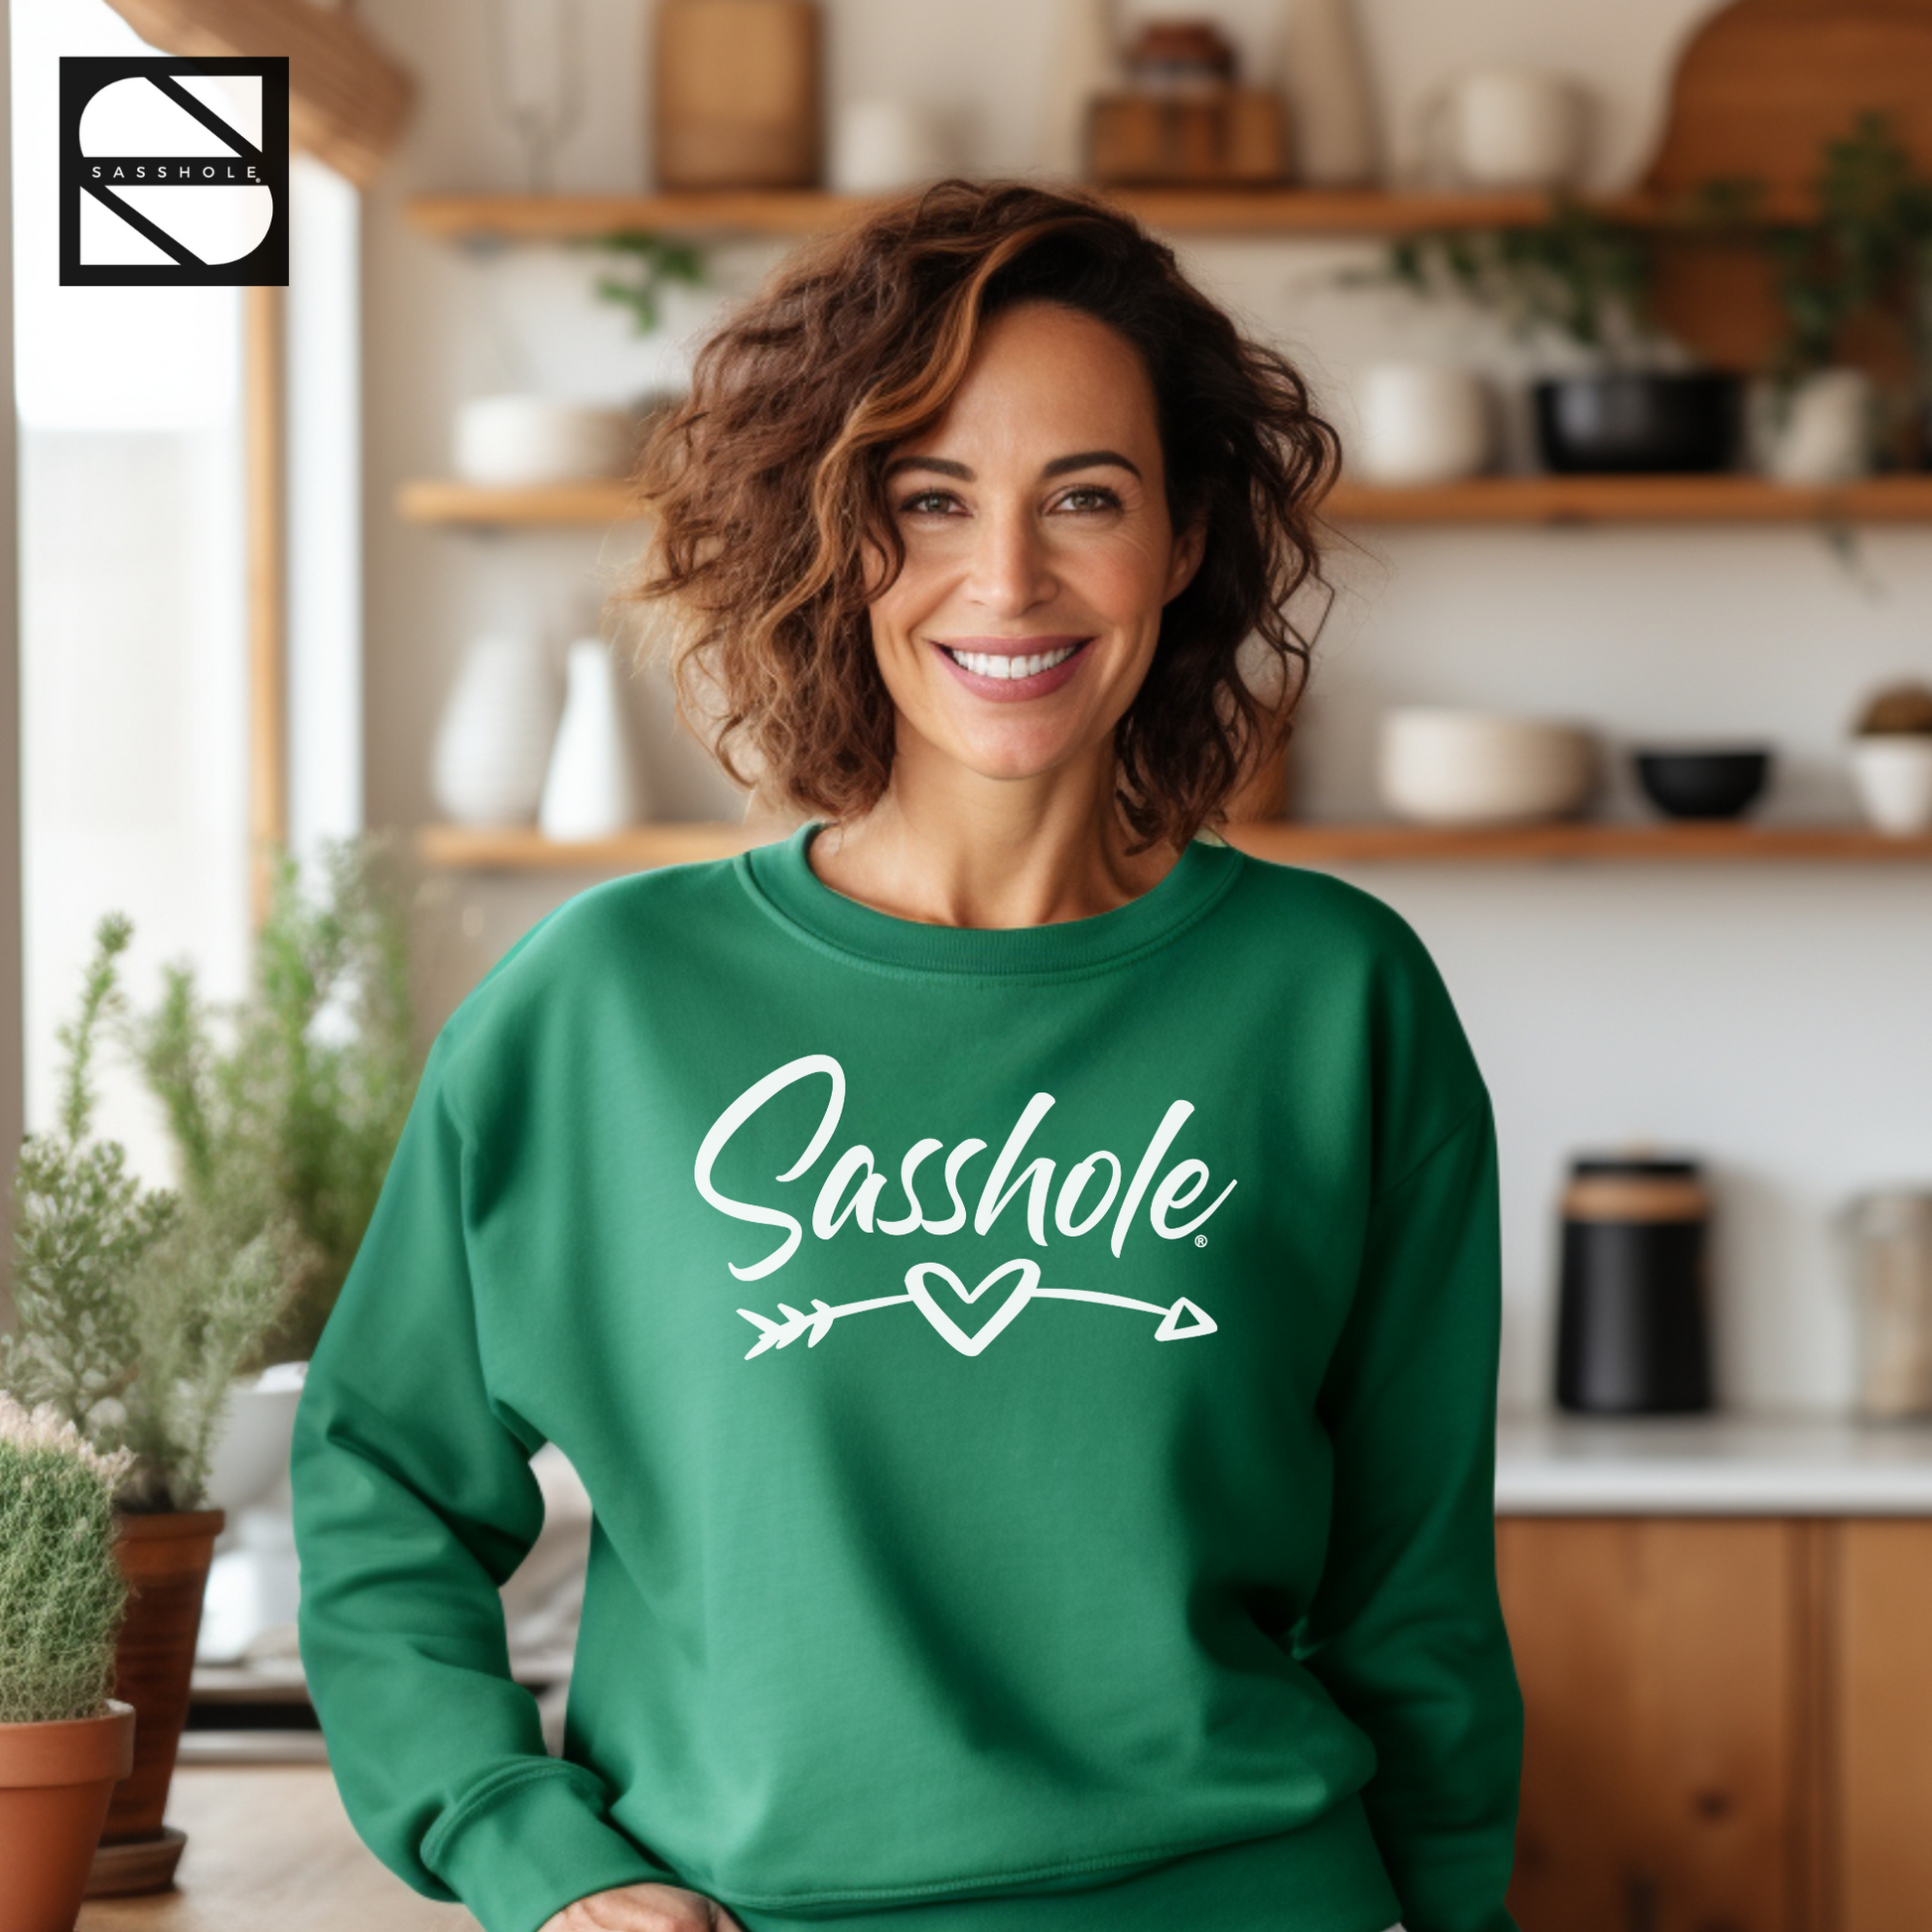 Women's Funny Irish Green Sweatshirt